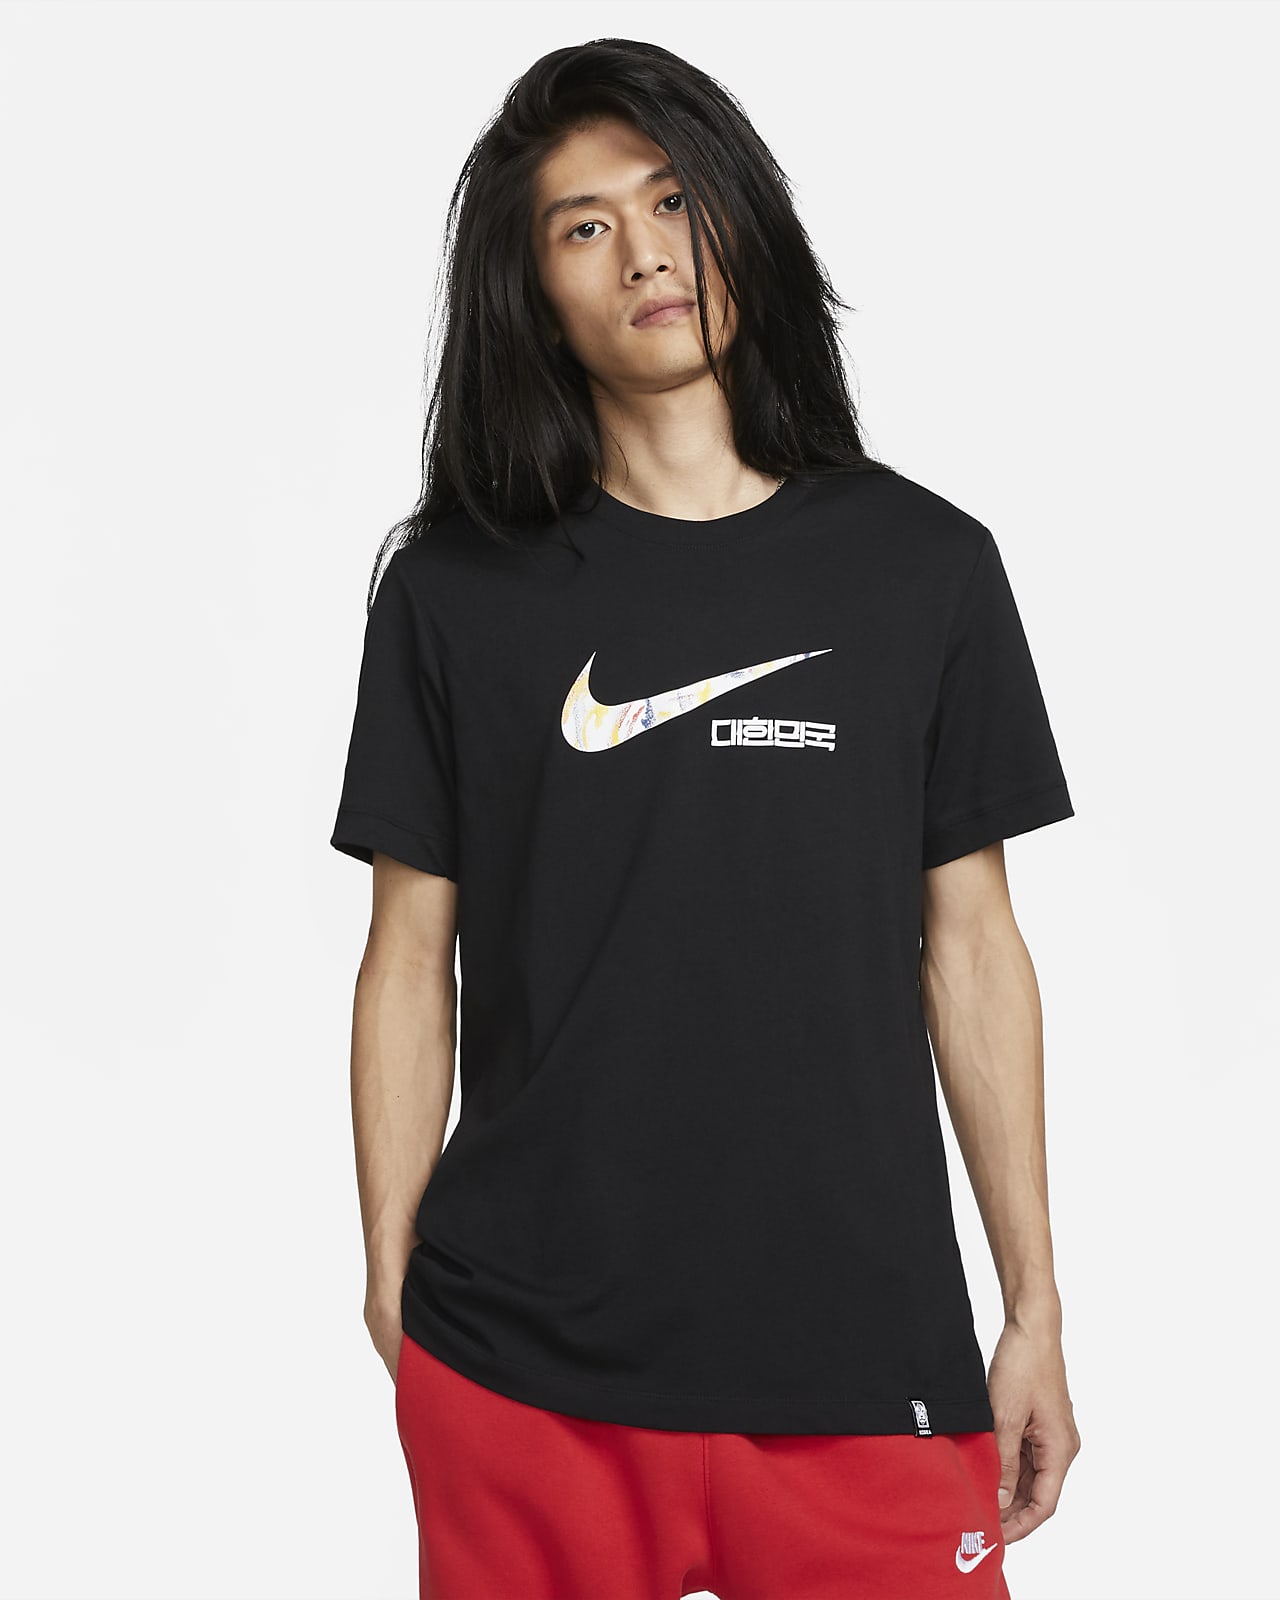 aficionado Concentración Peligro Corea Swoosh Camiseta Nike - Hombre. Nike ES